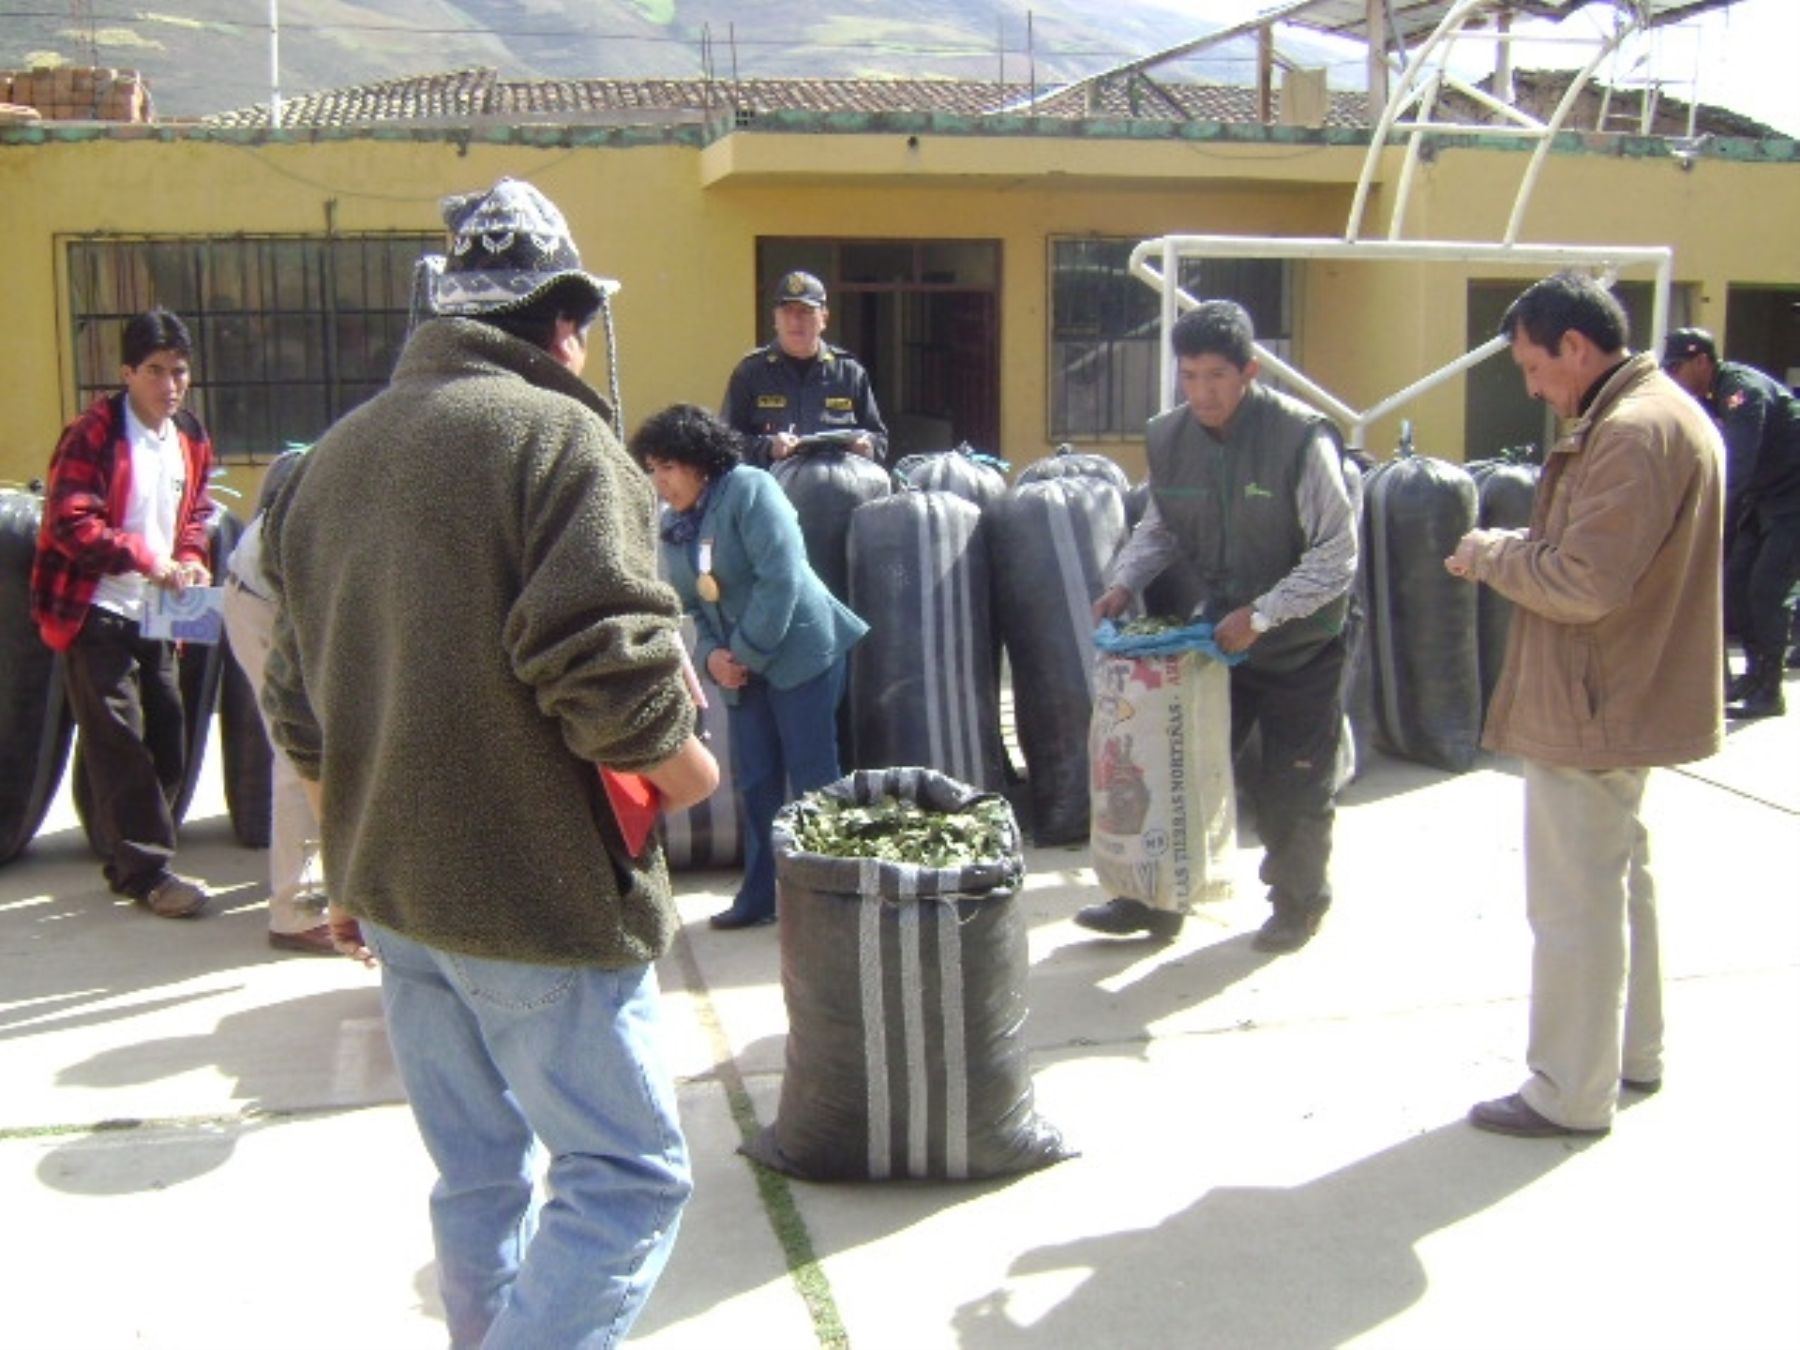 Sacos con hoja de coca incautados en Huancavelica. Foto: ANDINA / Pedro Tinoco.